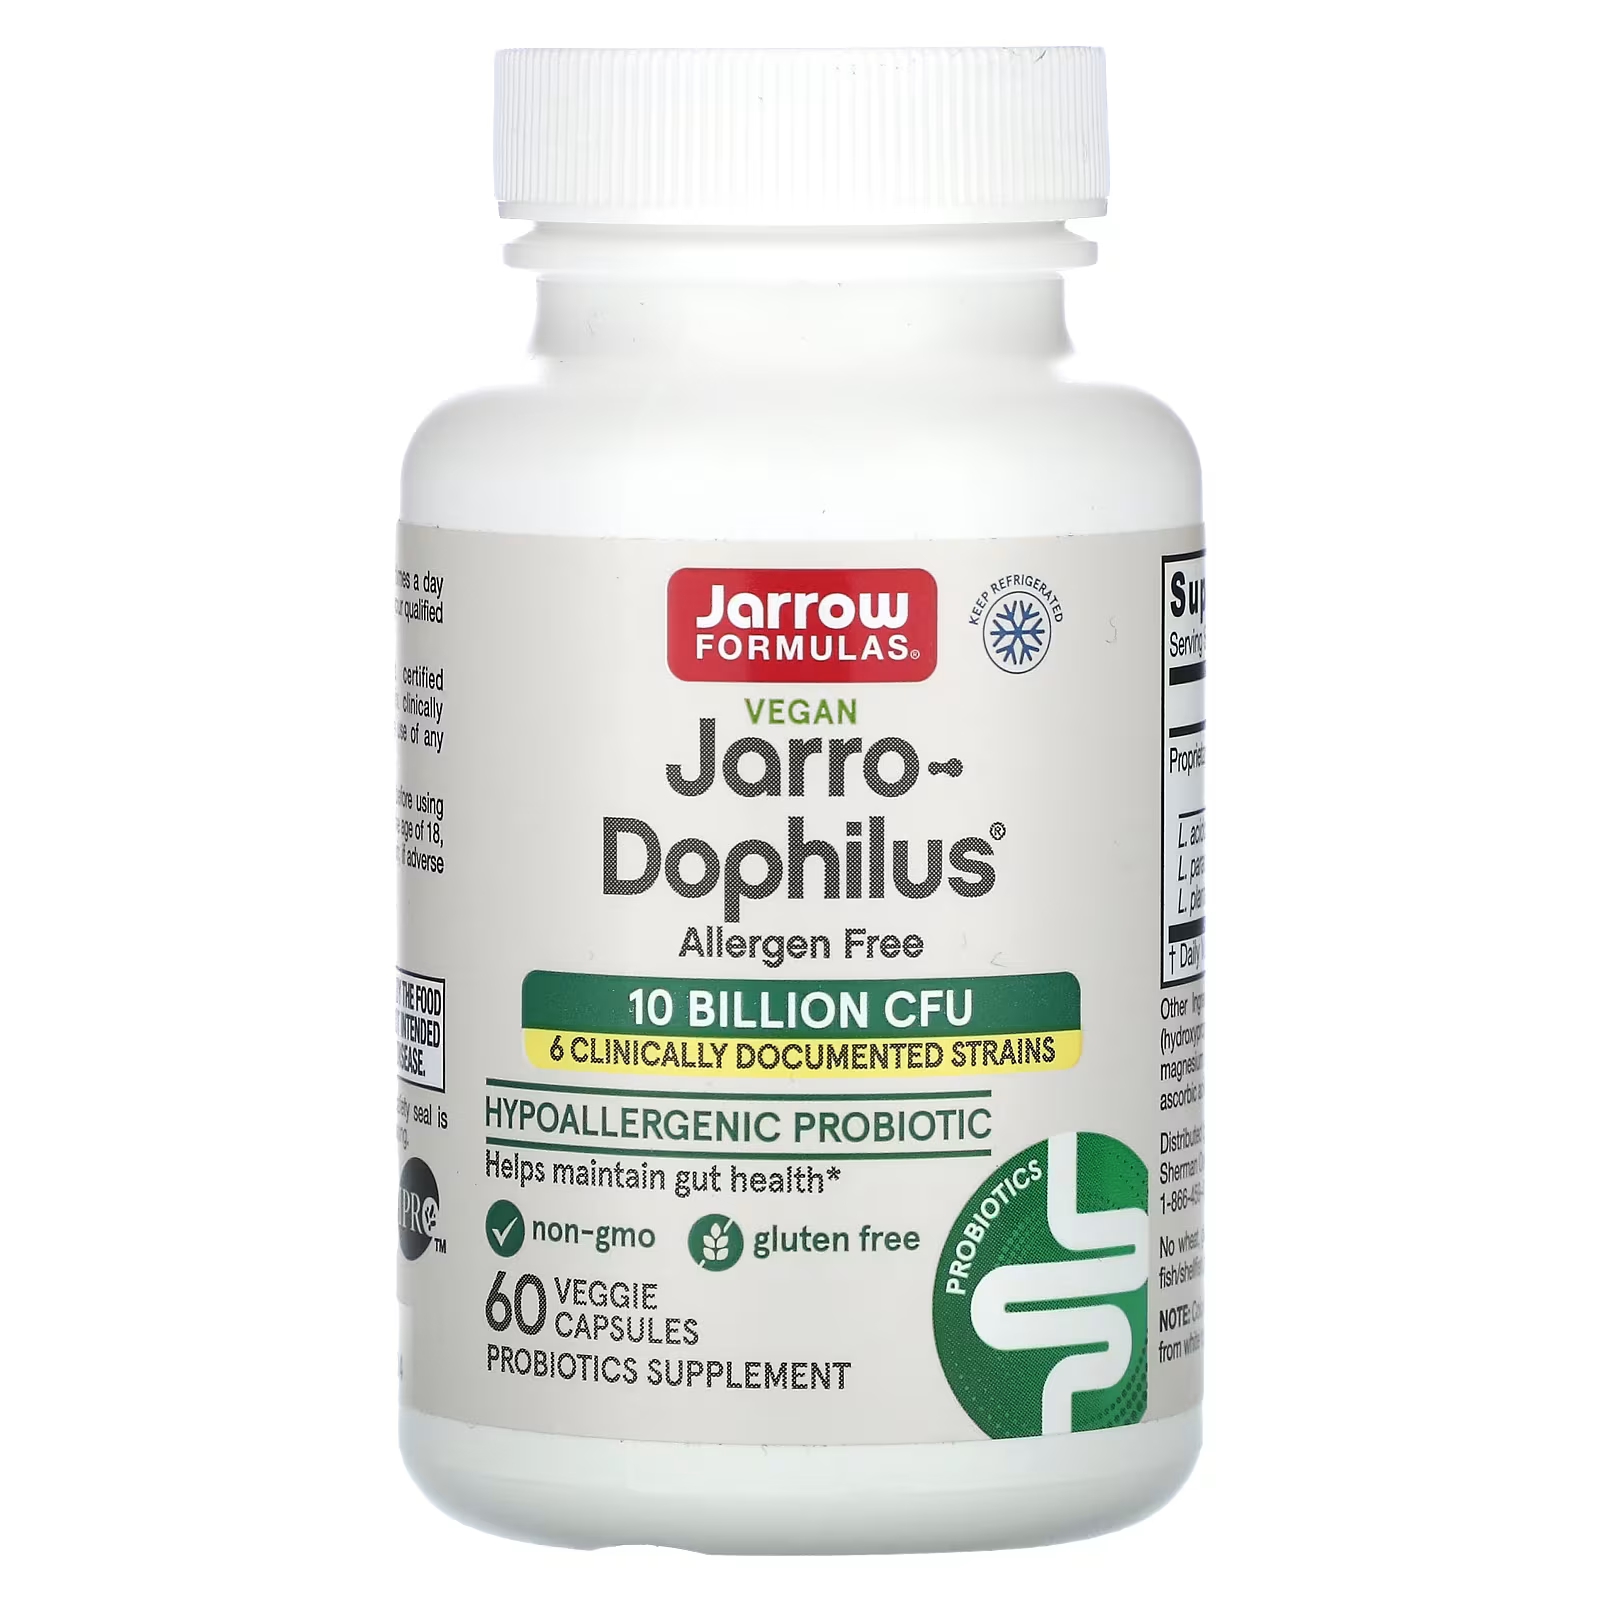 пробиотики для детей jarrow formulas jarro dophilus baby 3 billion cfu 60 г Добавка с пробиотиками Jarrow Formulas Jarro-Dophilus, 60 растительных капсул